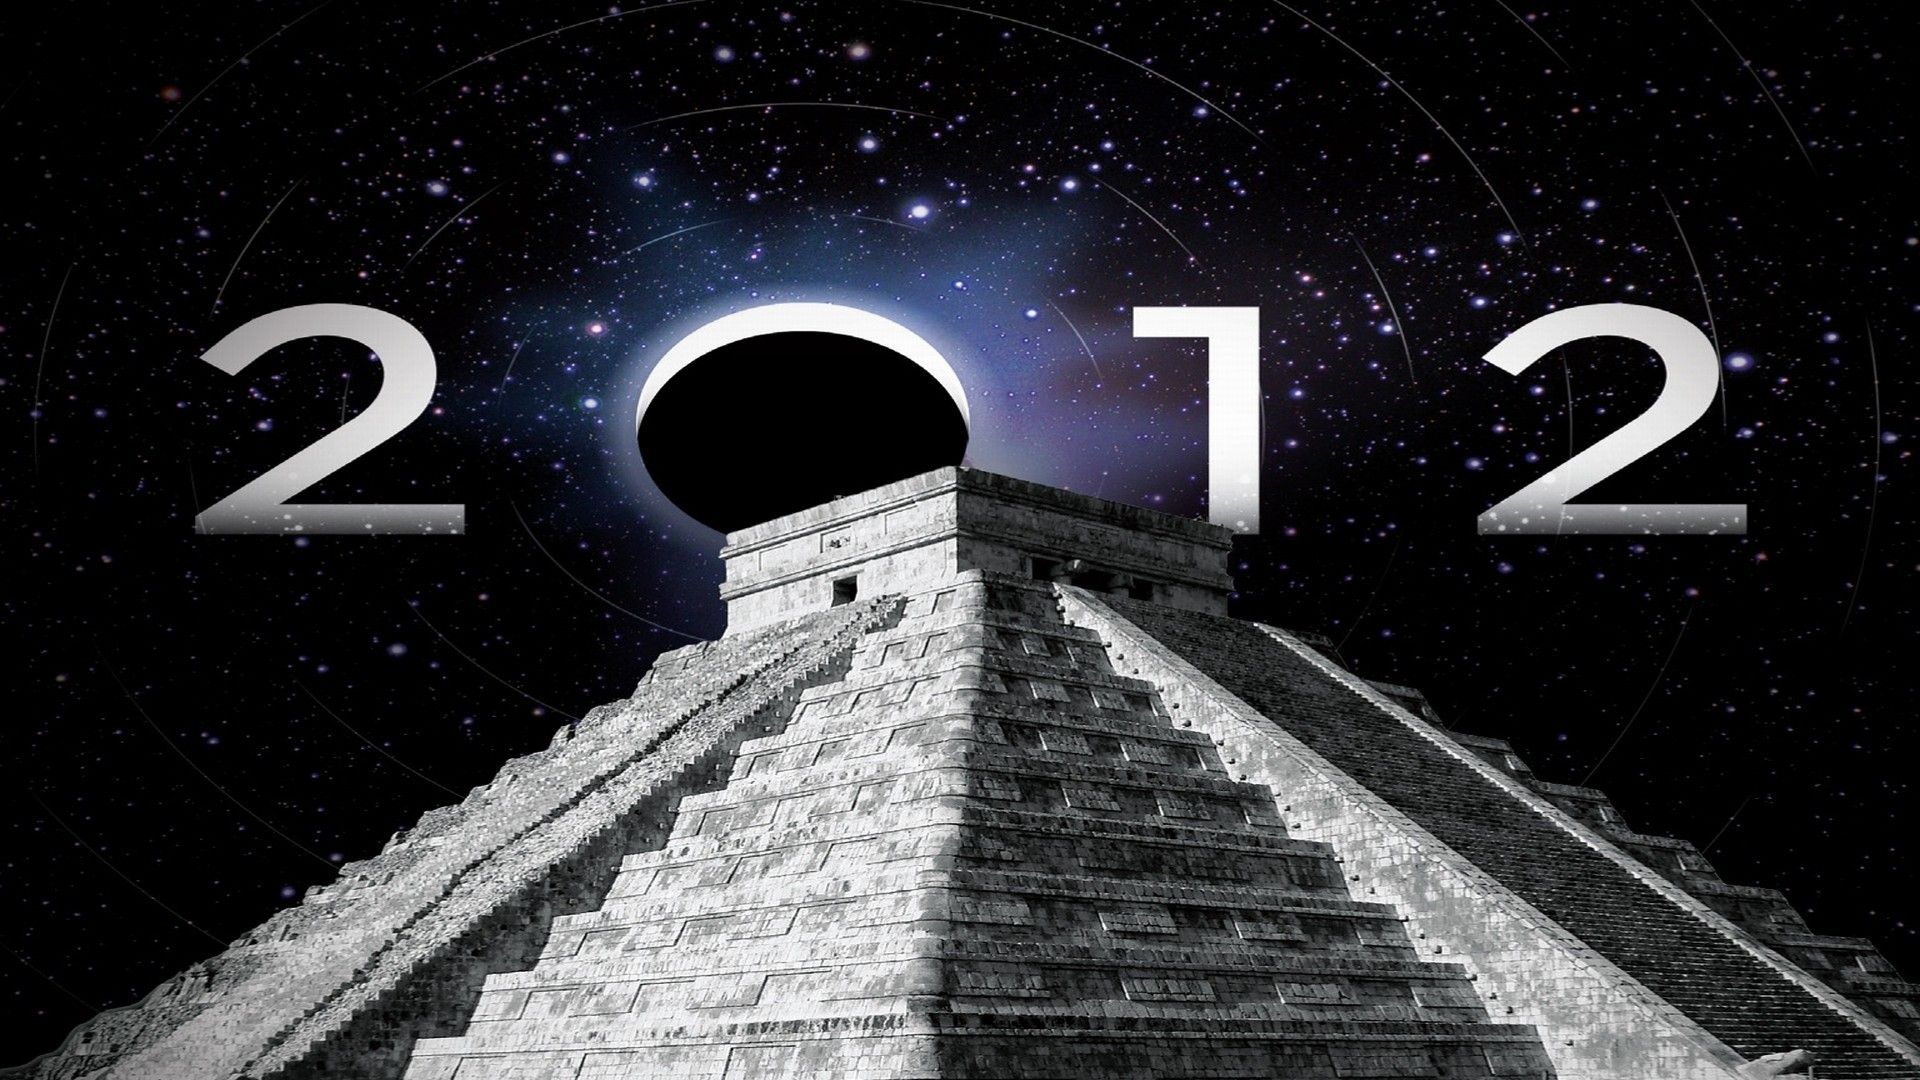 Cubierta de 2012: Ciencia o superstición